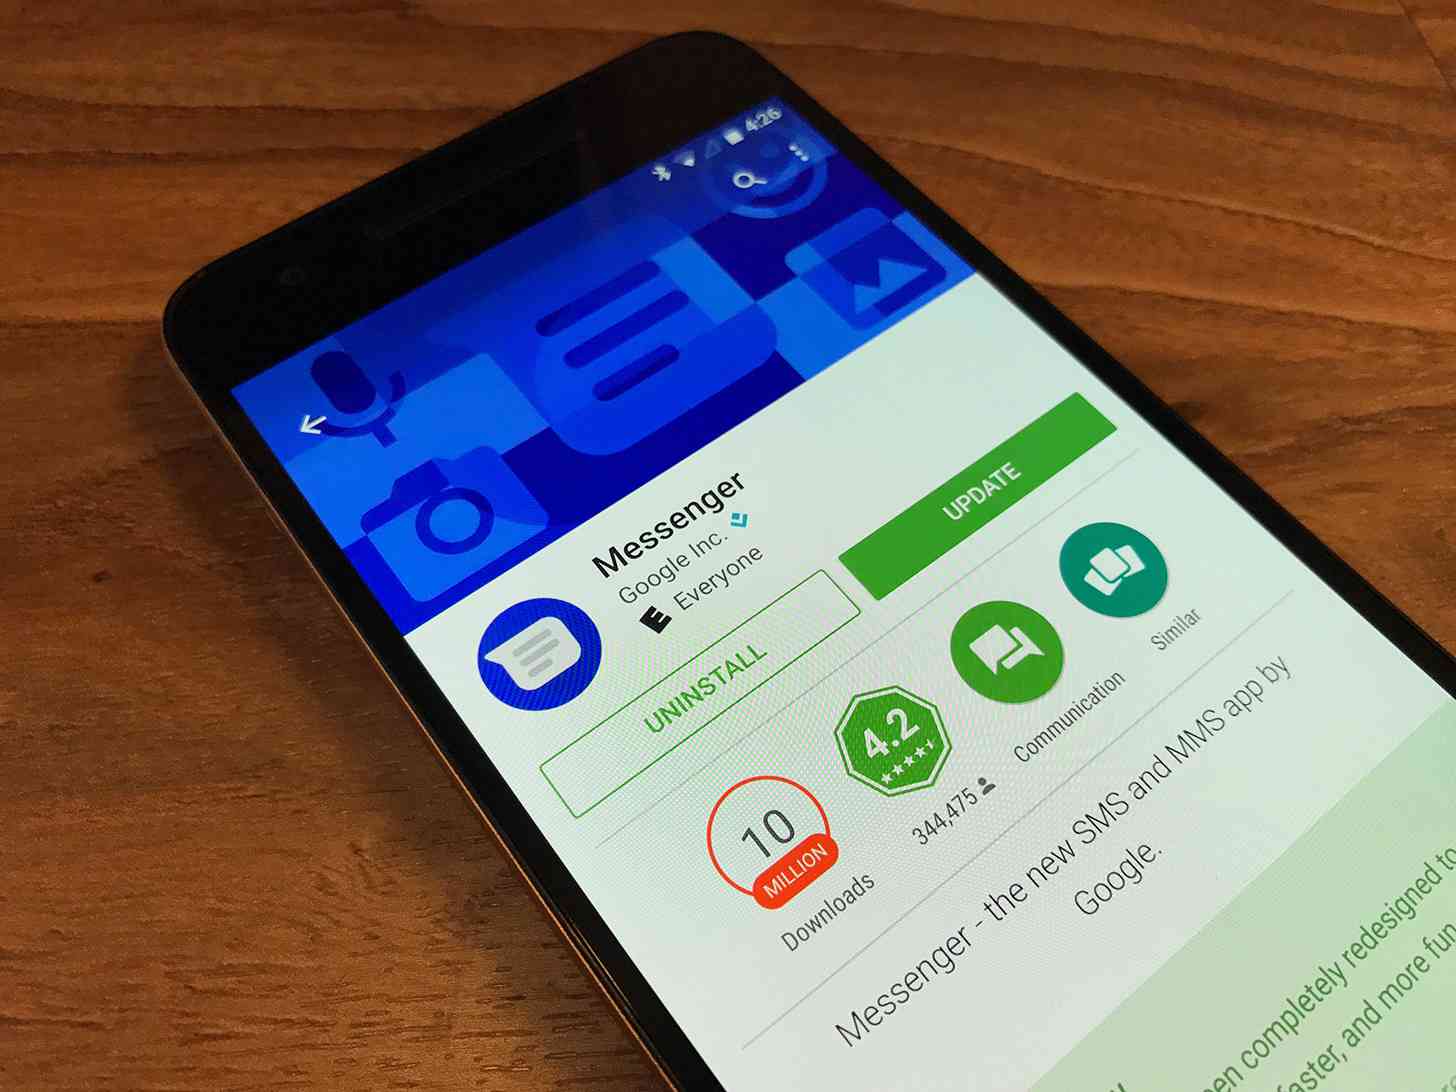 Google Messenger Play Store app update